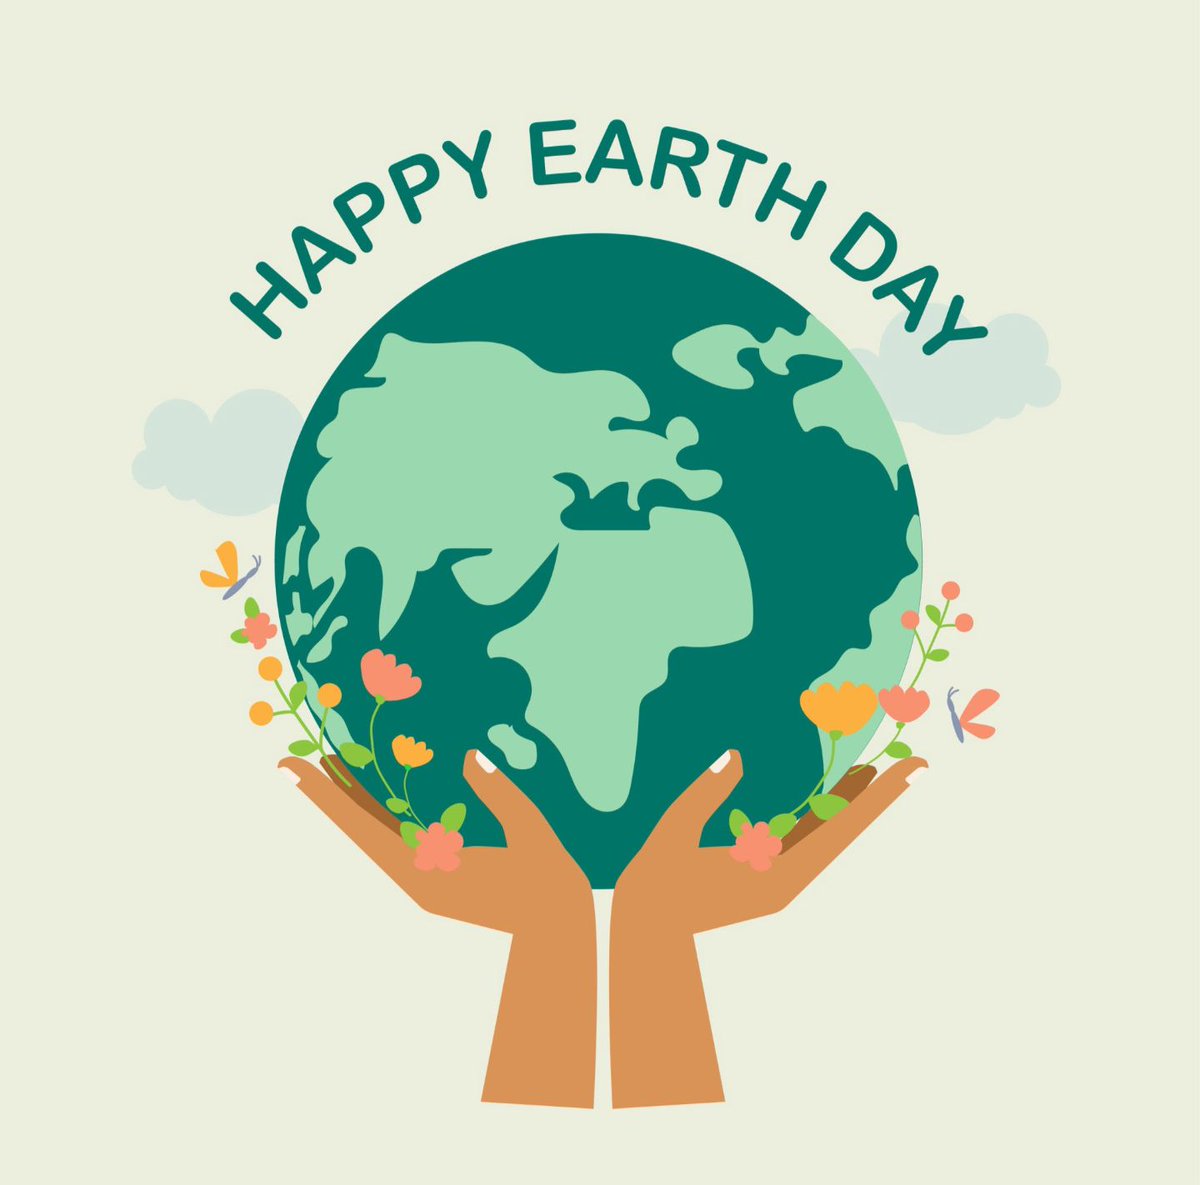 Happy Earth Day from #TrinityDC!